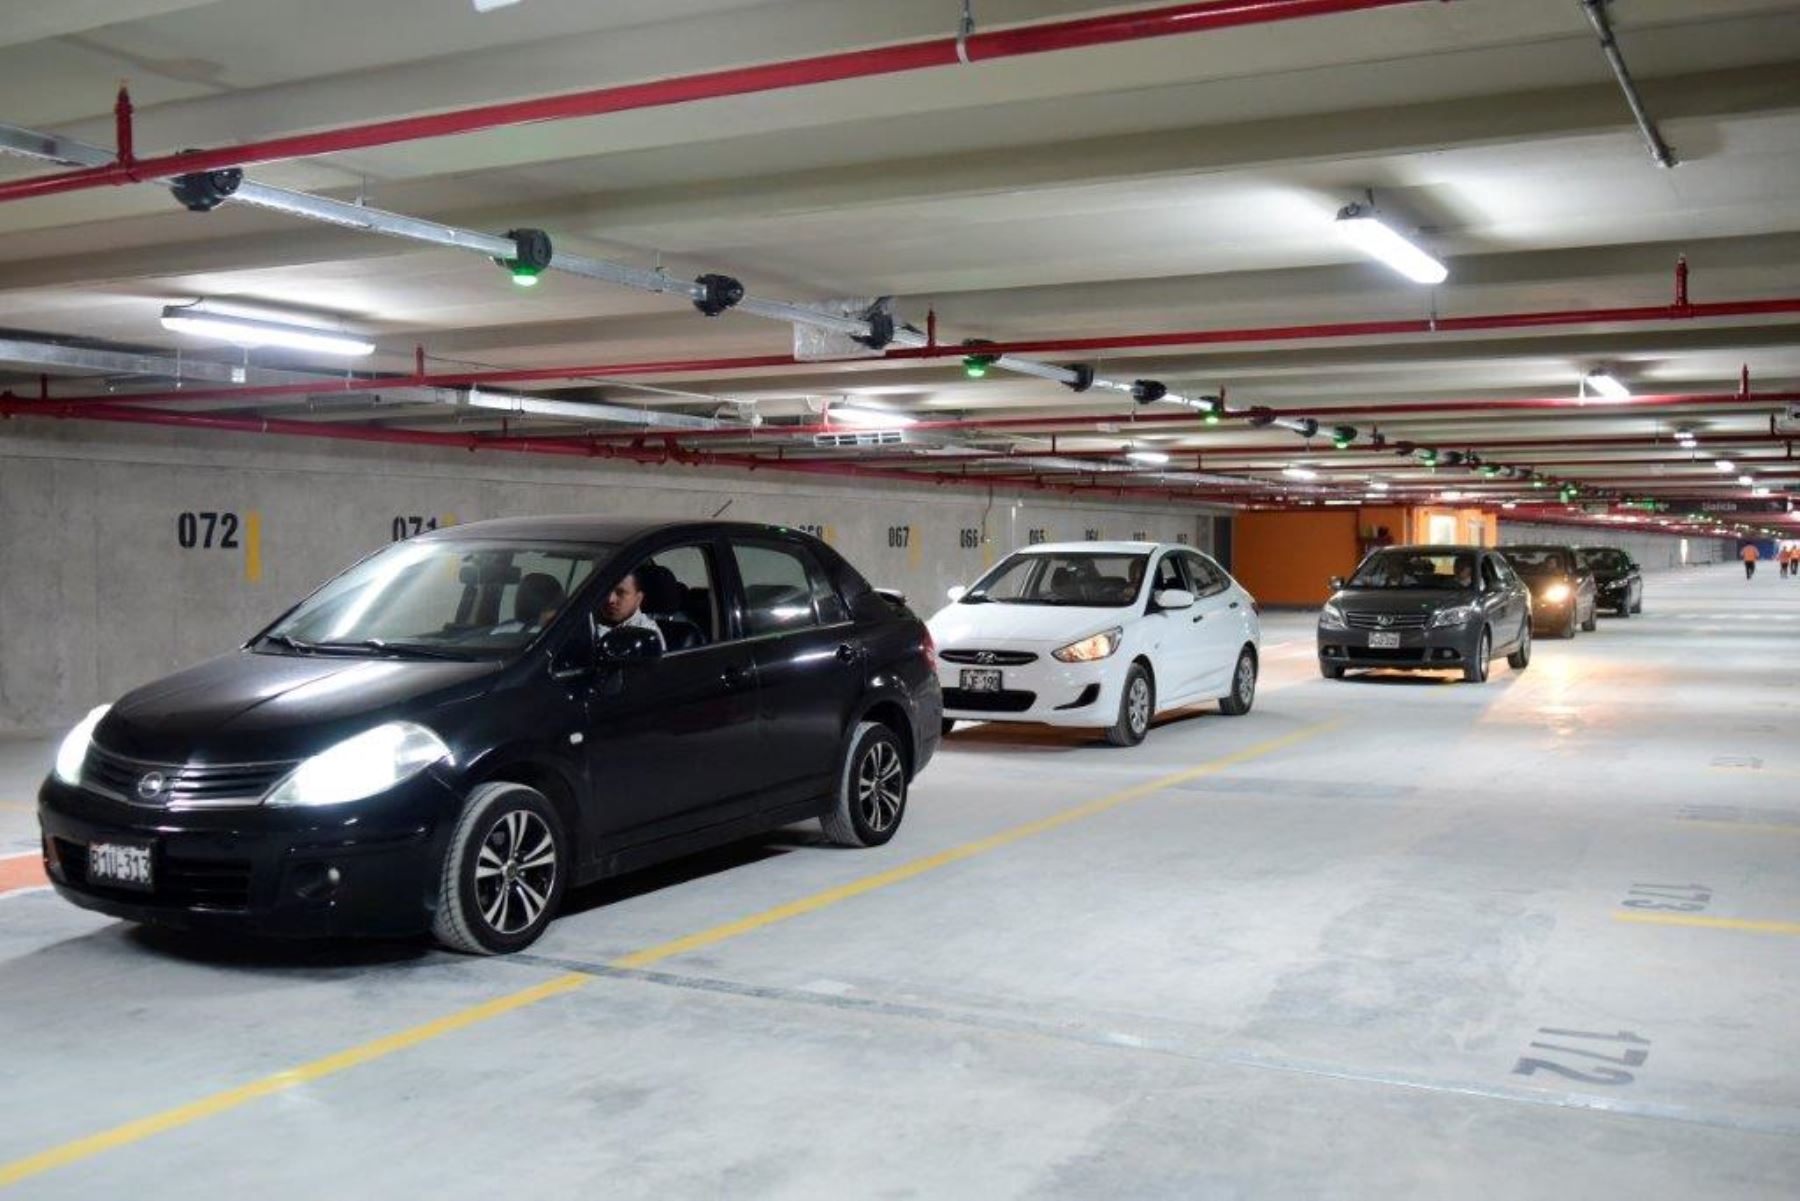 Se inició el uso de estacionamiento subterráneo en San Isidro de manera gratuita. Foto: ANDINA/Difusión.